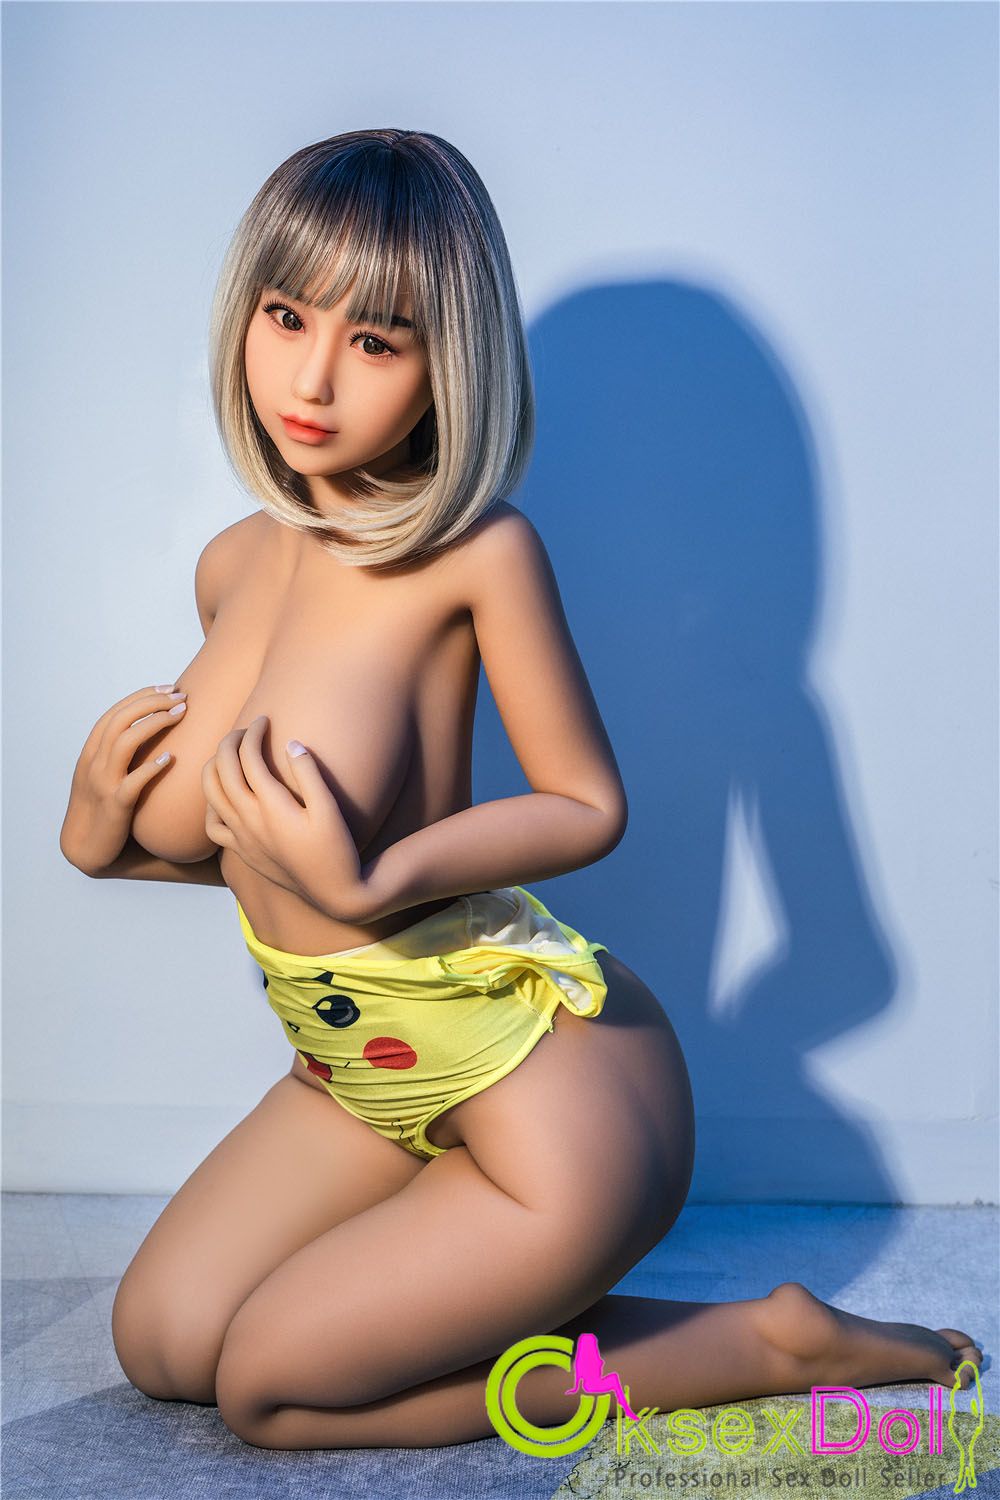 Japanese Girl Sex Doll Album